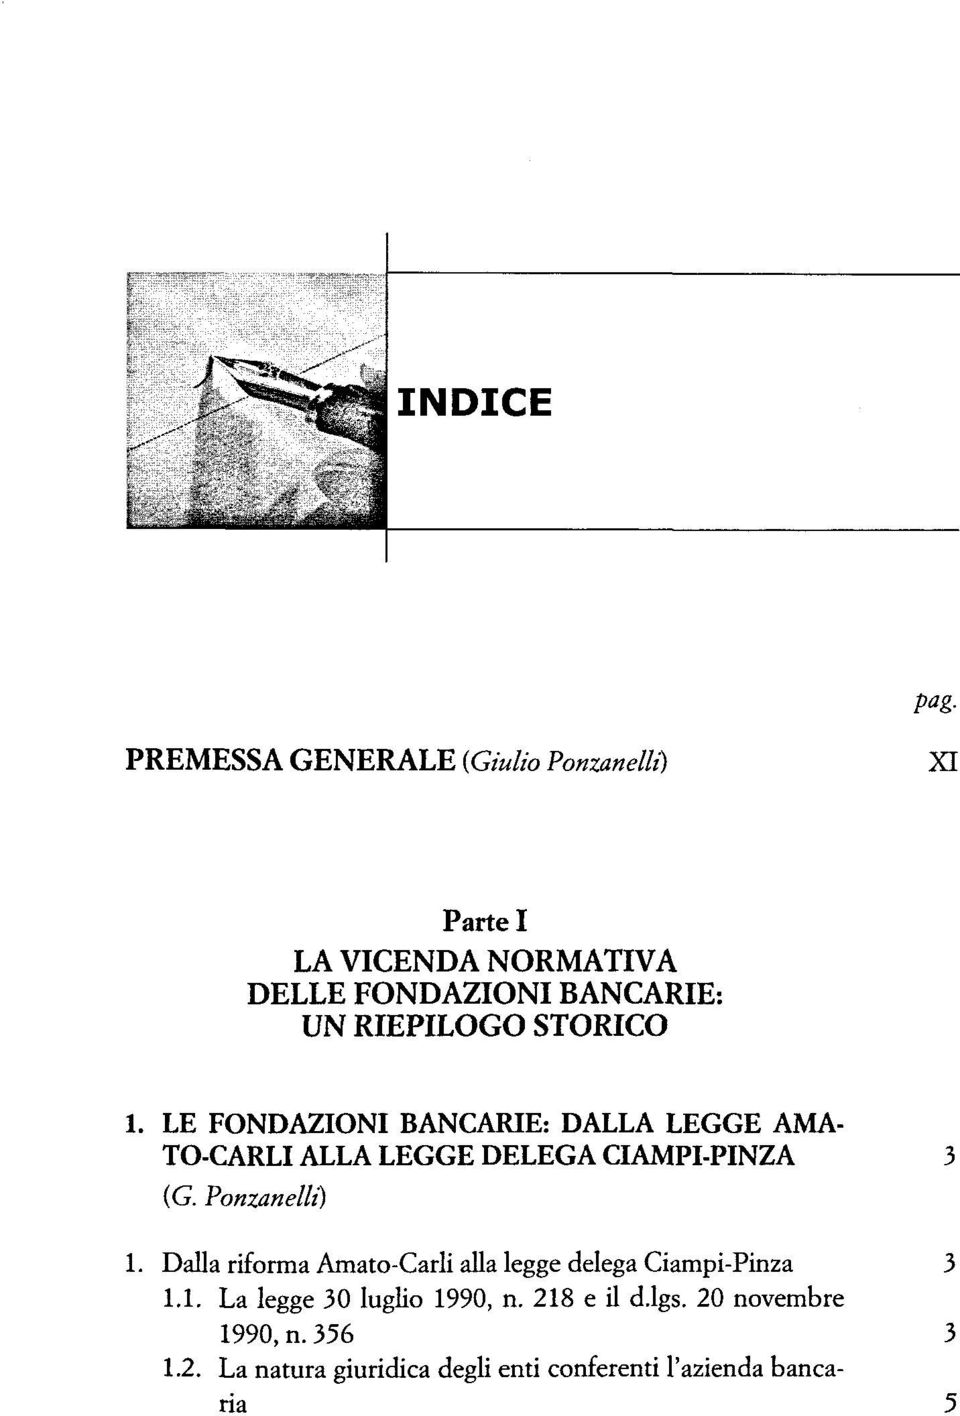 Ponzanelli) 1. Dalla riforma Amato-Carli alla legge delega Ciampi-Pinza 3 1.1. La legge 30 luglio 1990, n.